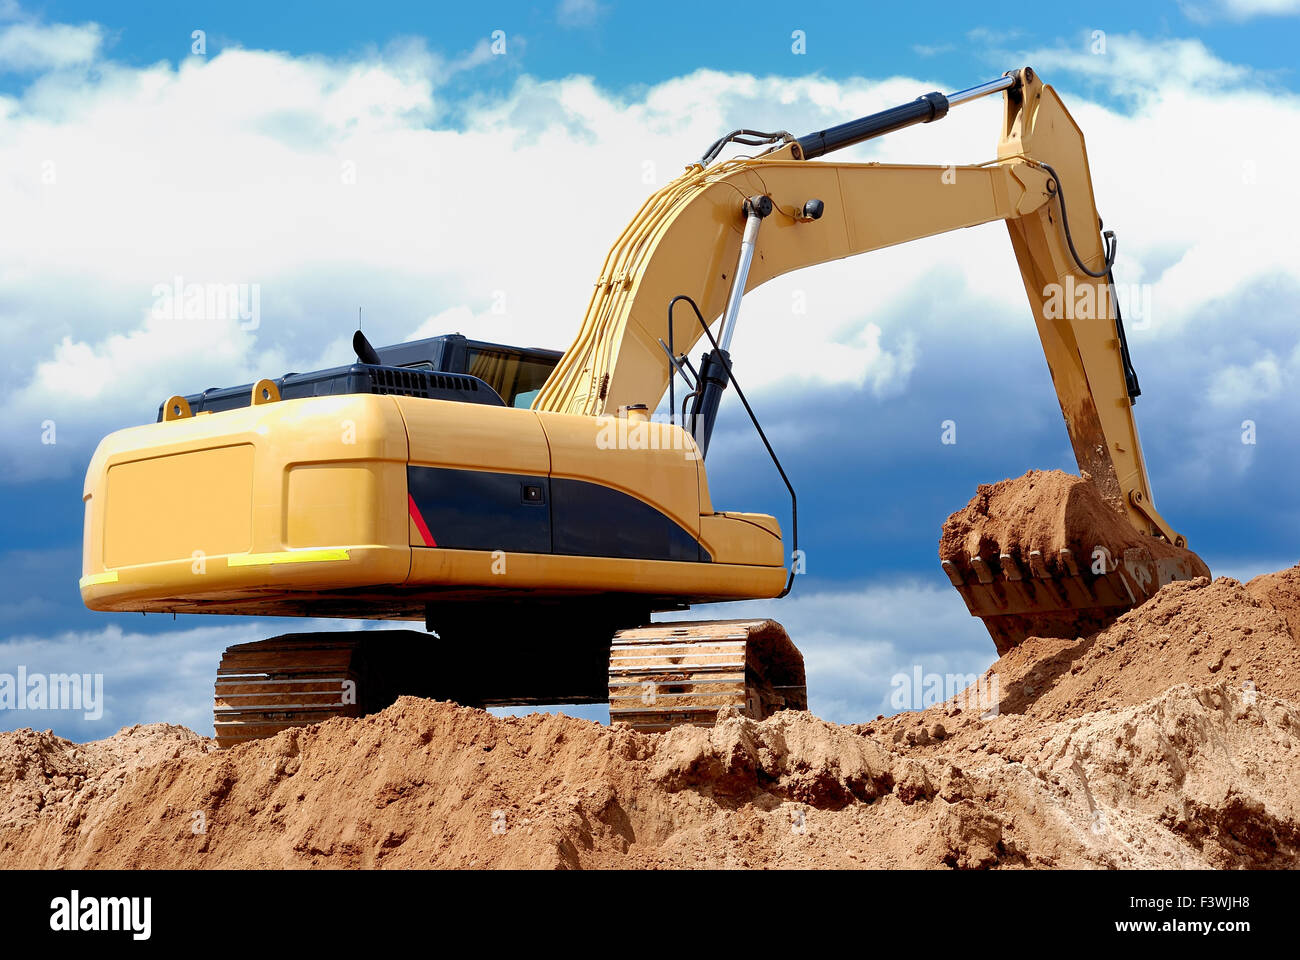 Excavator loader in sandpit Stock Photo